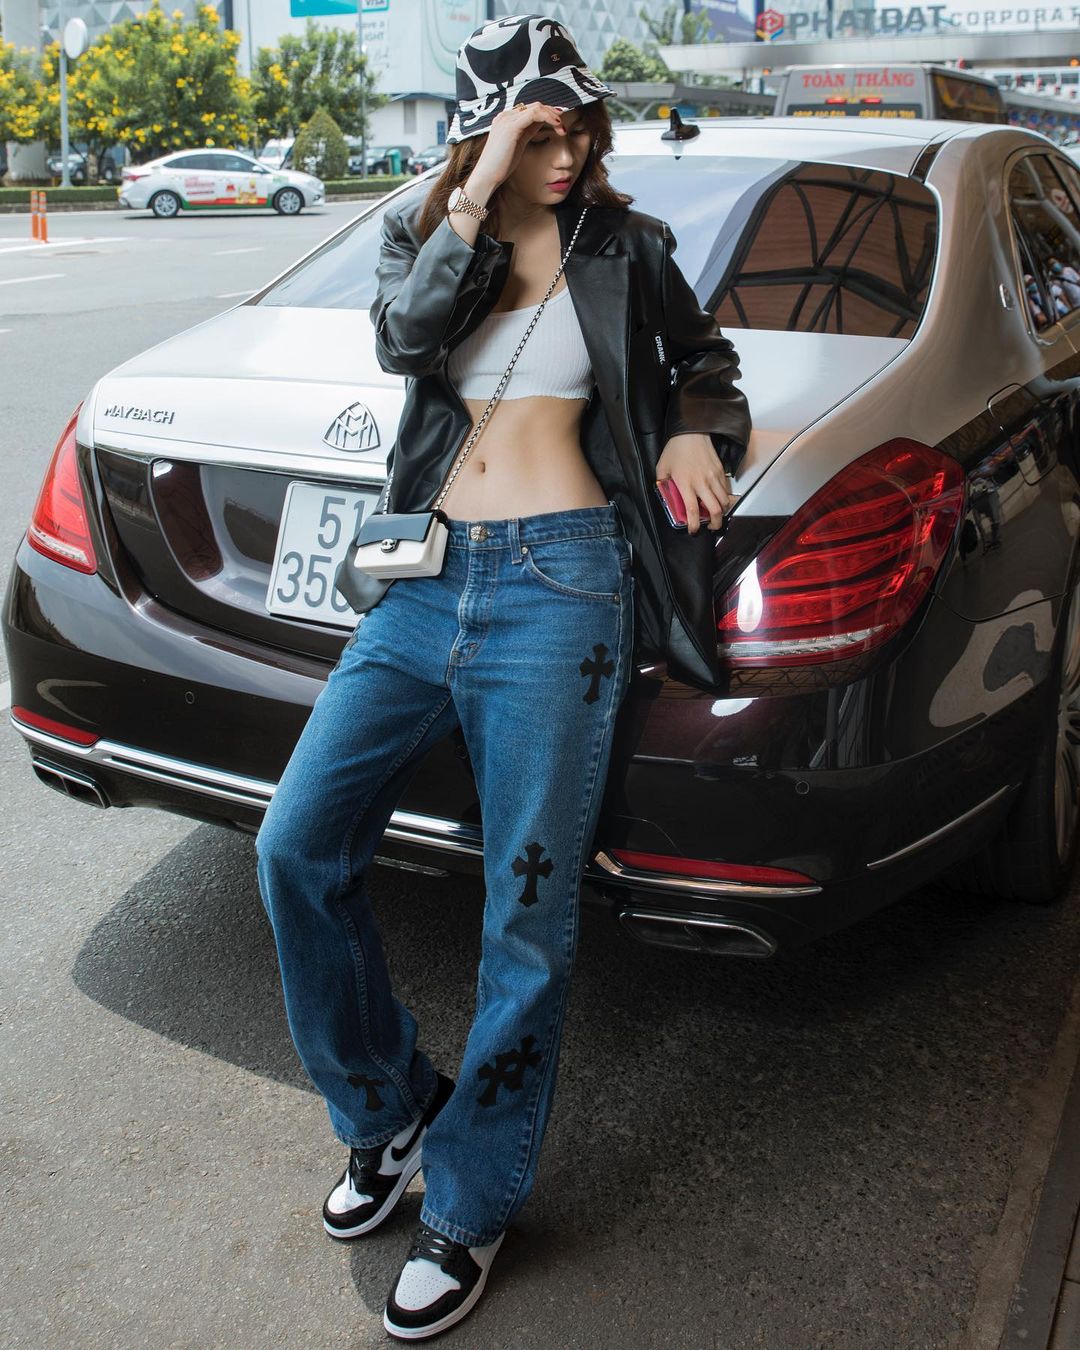 Trước đó, Ngọc Trinh từng khiến dân tình 'u mê' khi vòng eo 56 trong thiết kế hợp tác giữa thương hiệu Chrome Heart và Levi's. Những chân dài đính đám khác như Bella Hadid, Kylie Jenner cũng sở hữu chiếc quần jeans đắt giá này.